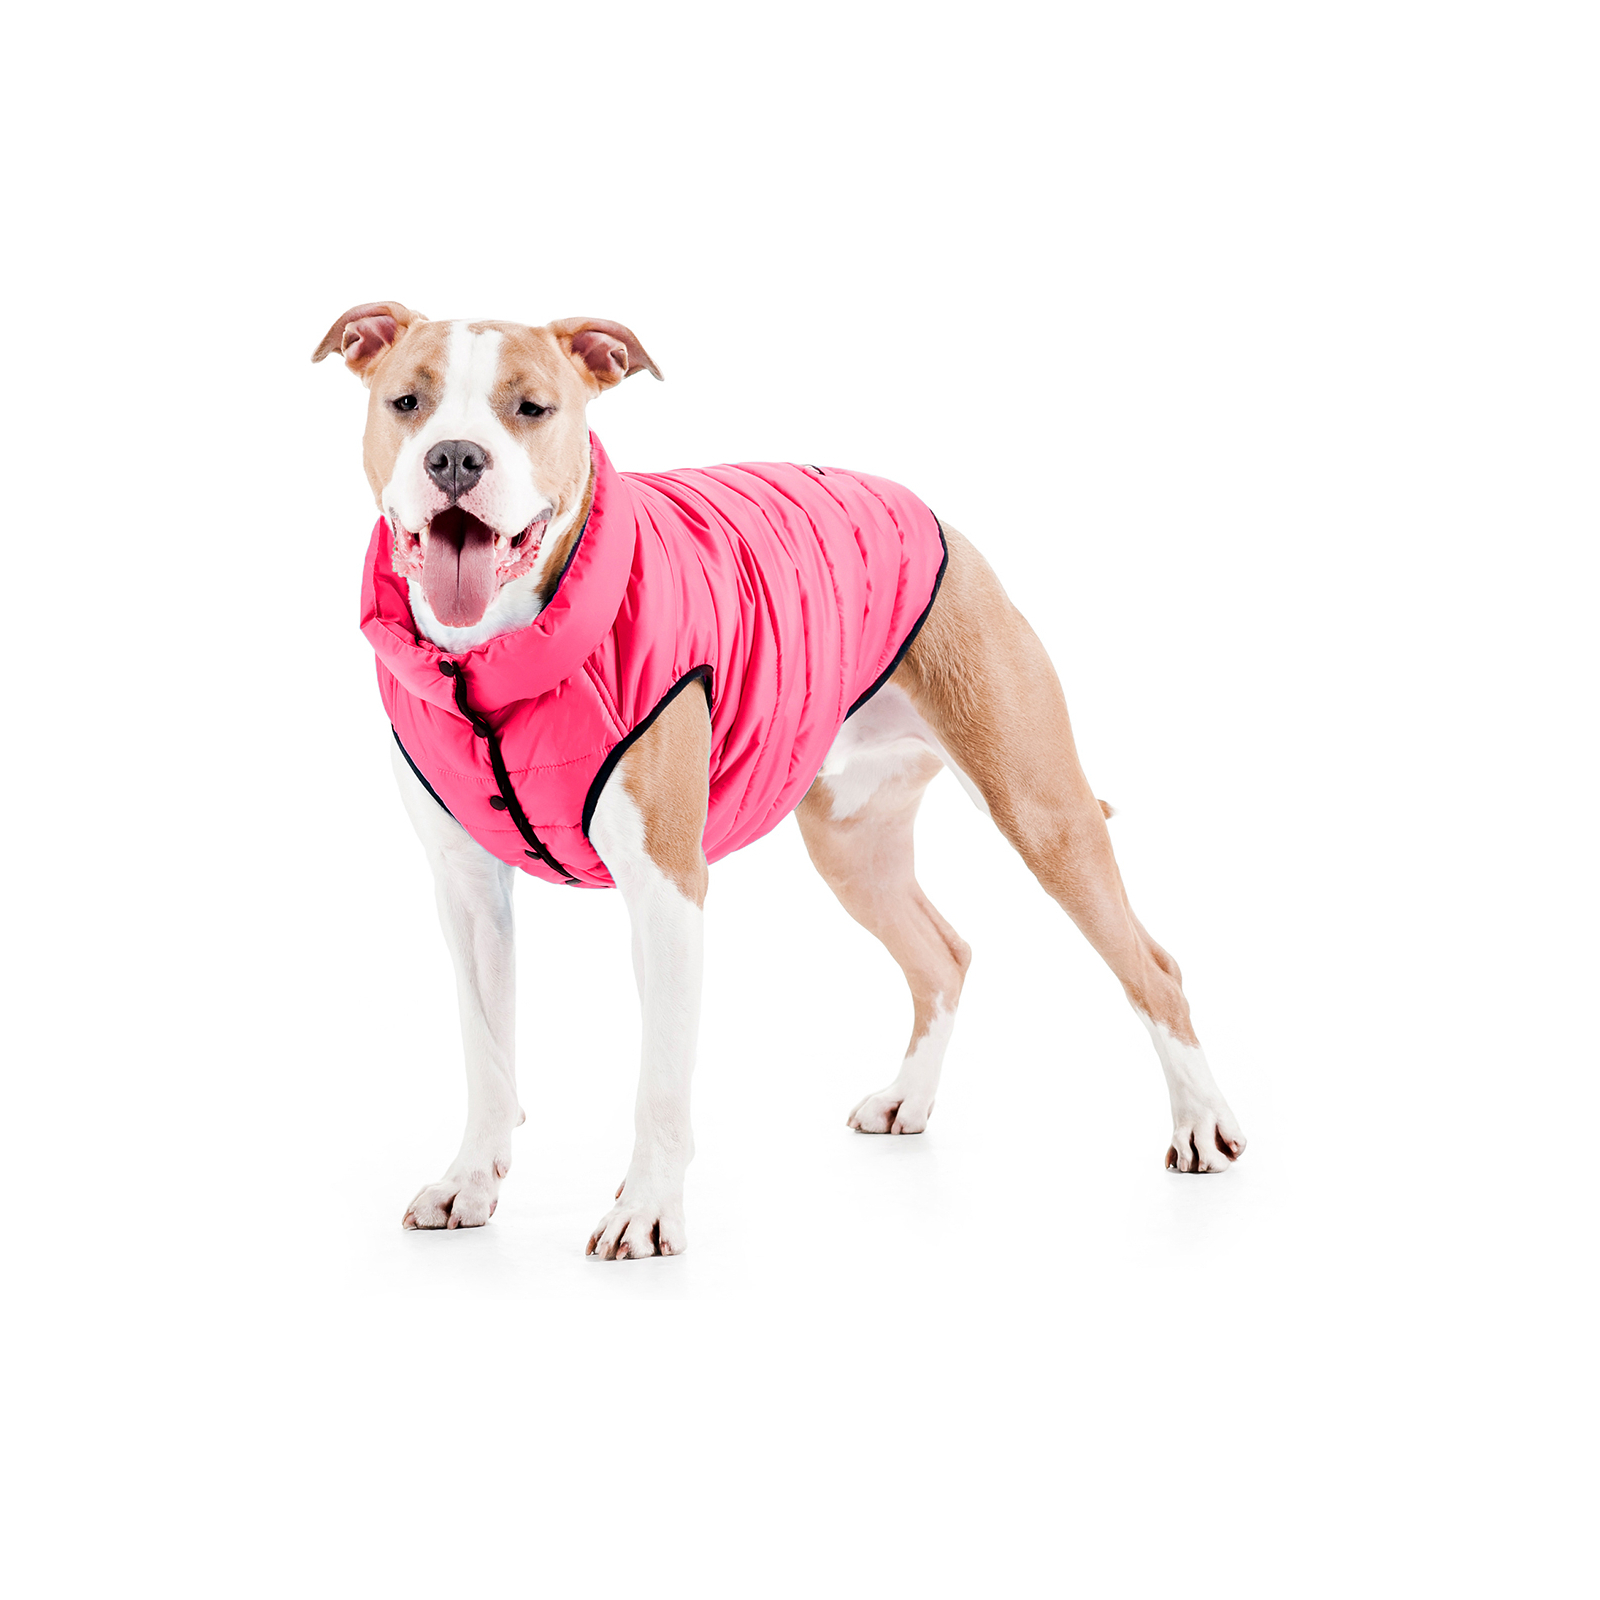 Курточка для животных Airy Vest One L 65 розовая (20767) изображение 3